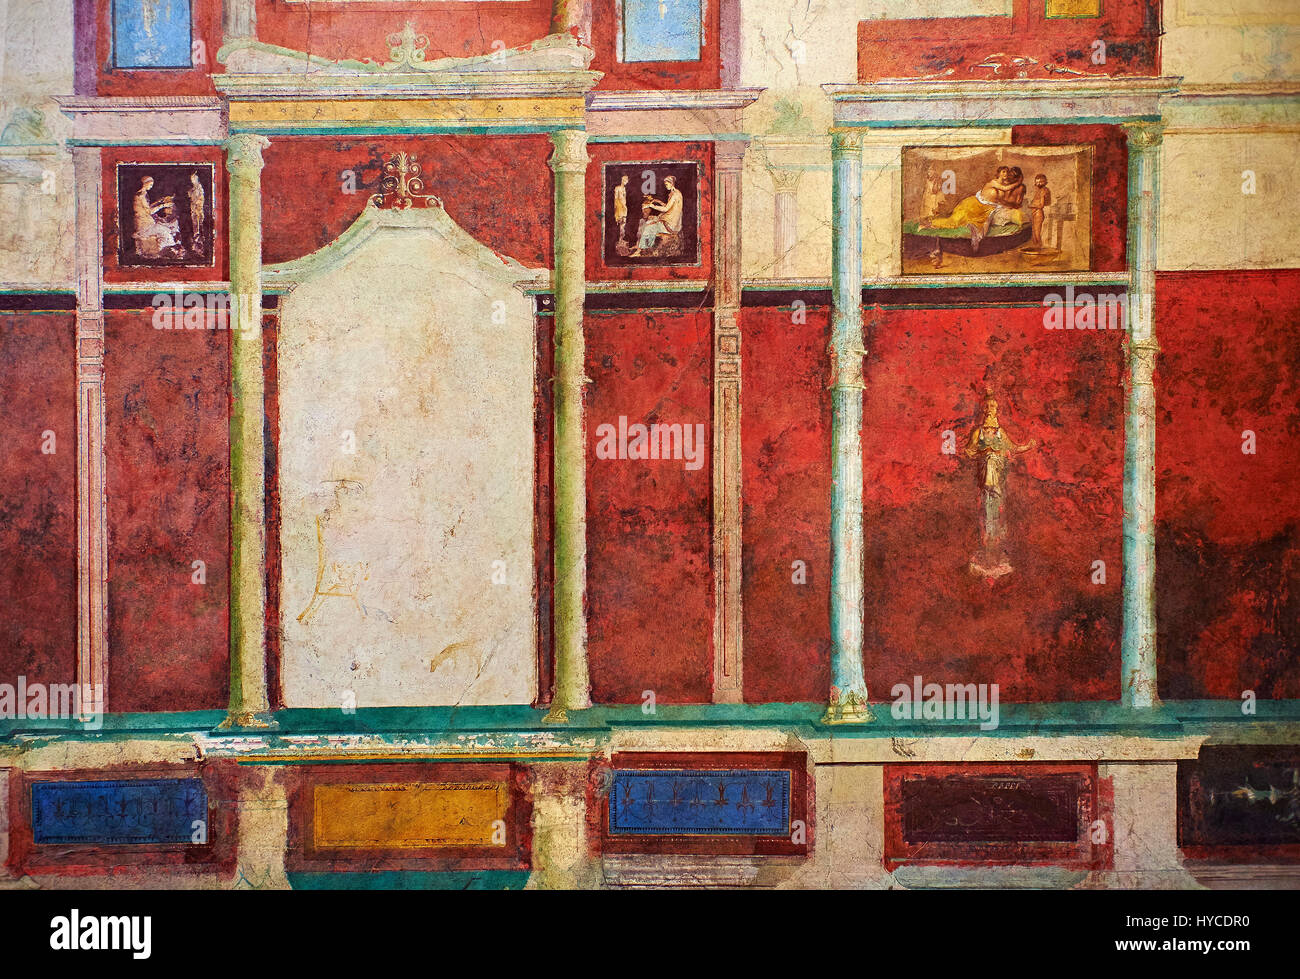 Römischen Fresko Wanddekorationen der Schlafzimmer D der Villa Farnese,  Rom. Museo Nazionale Romano (römisches Nationalmuseum), Rom, Italien.  Dieses Schlafzimmer h Stockfotografie - Alamy